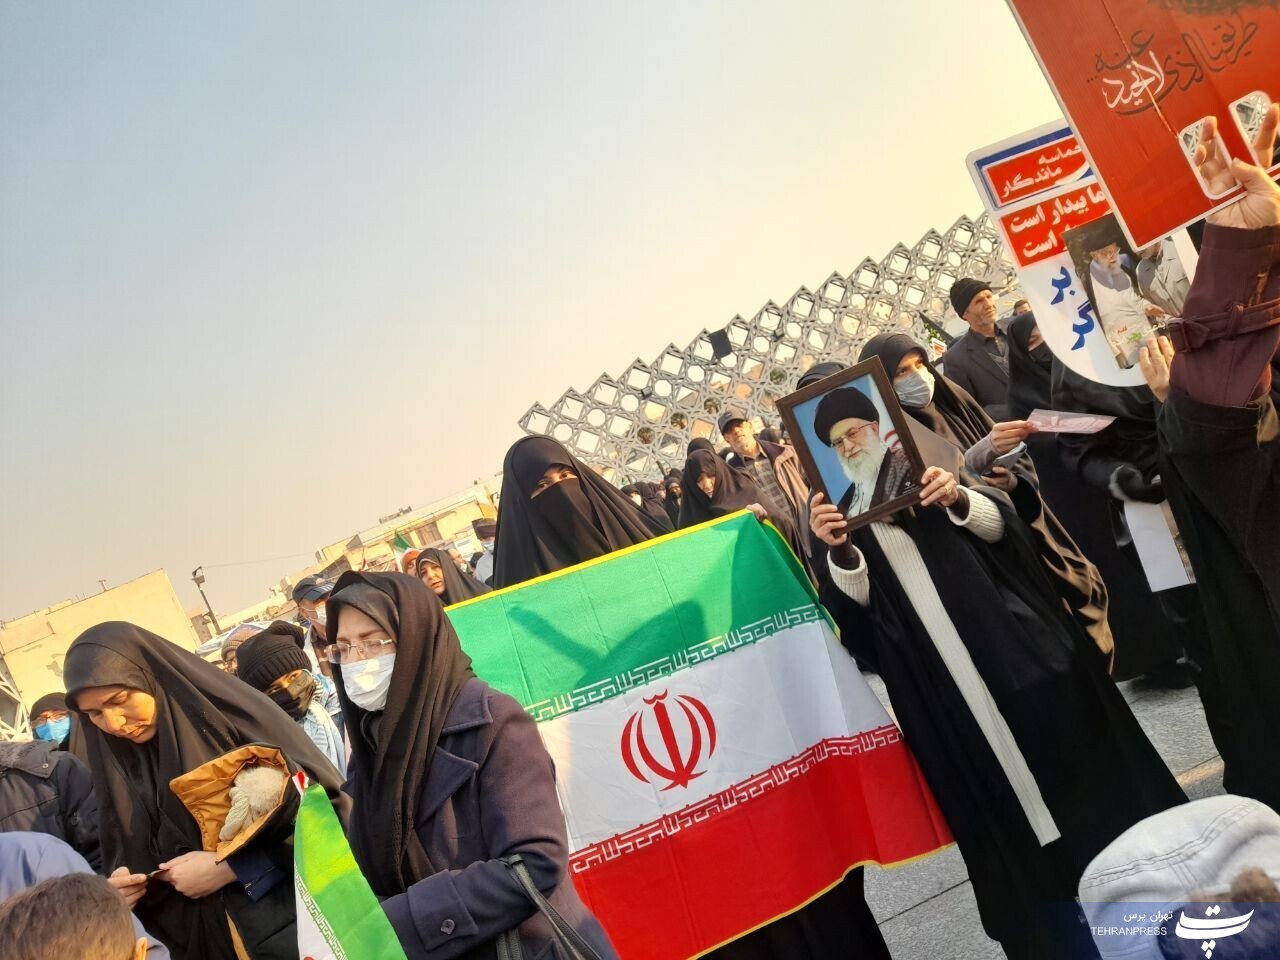 عکس| مراسم ۹دی تهران در میدان امام حسین برگزار شد